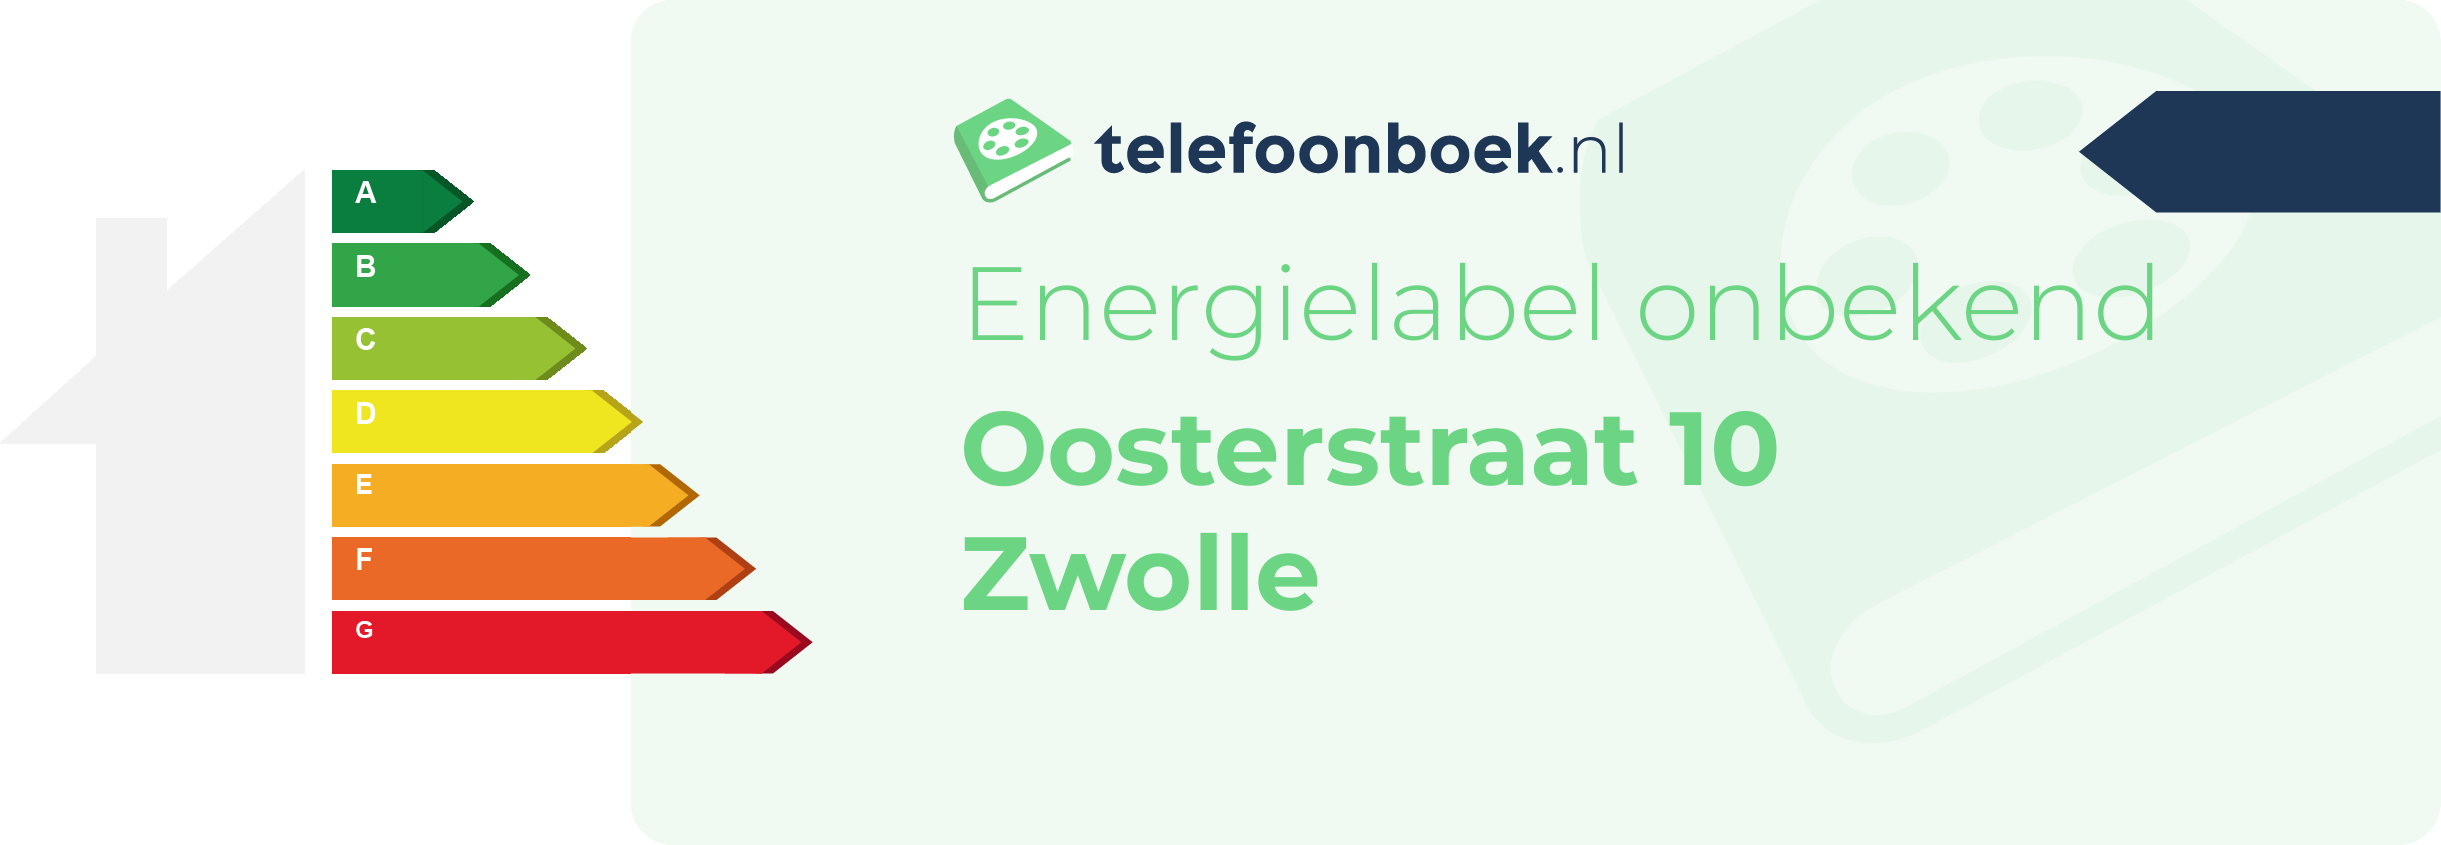 Energielabel Oosterstraat 10 Zwolle